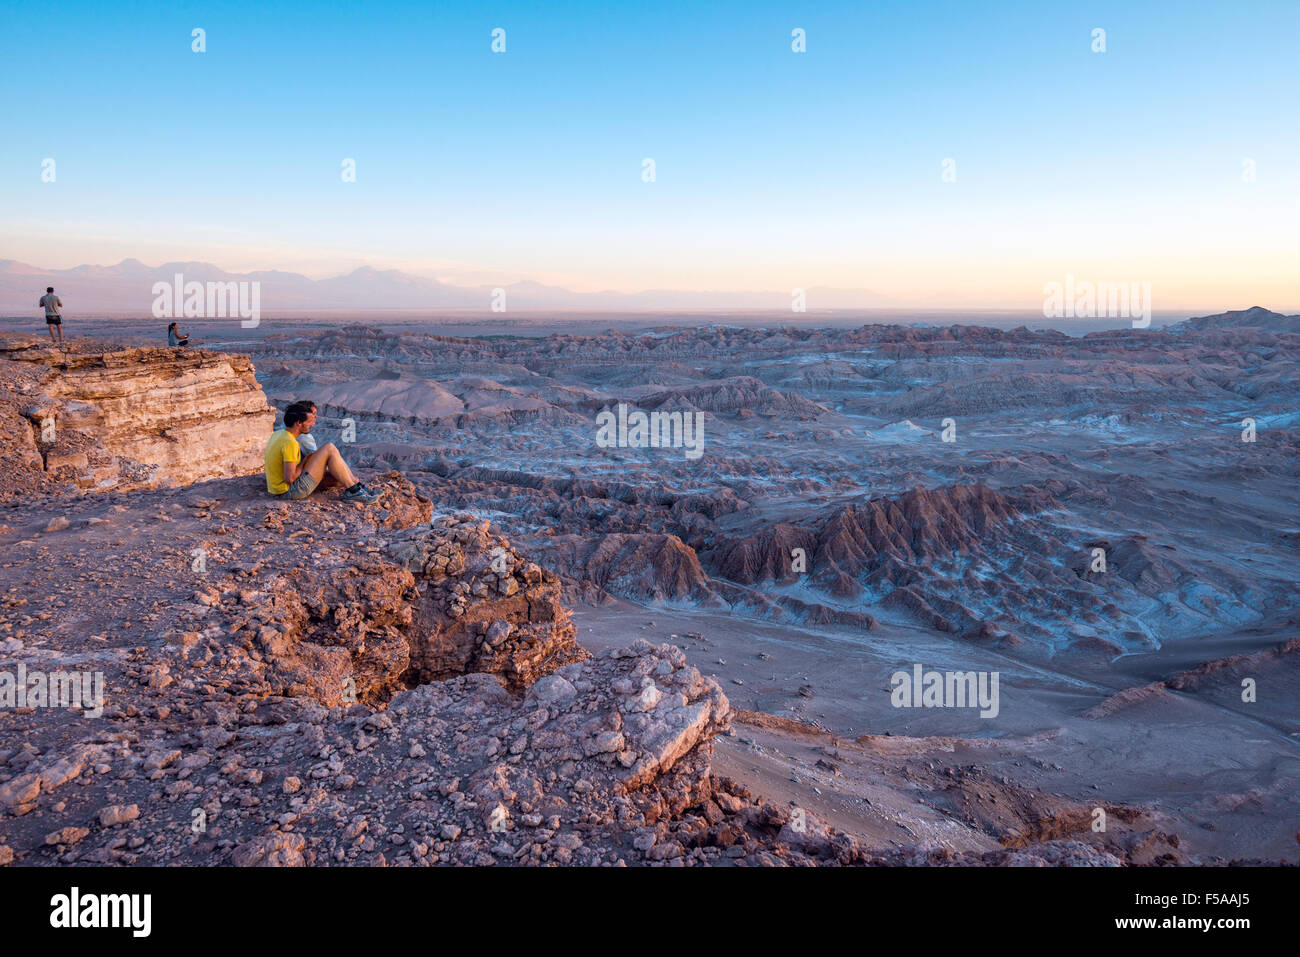 ATACAMA-Wüste, CHILE - 7. Dezember 2014: Touristen machen Sie Bilder in der Atacama-Wüste, Chile. Atacama-Wüste richtige nimmt 105.000 Stockfoto